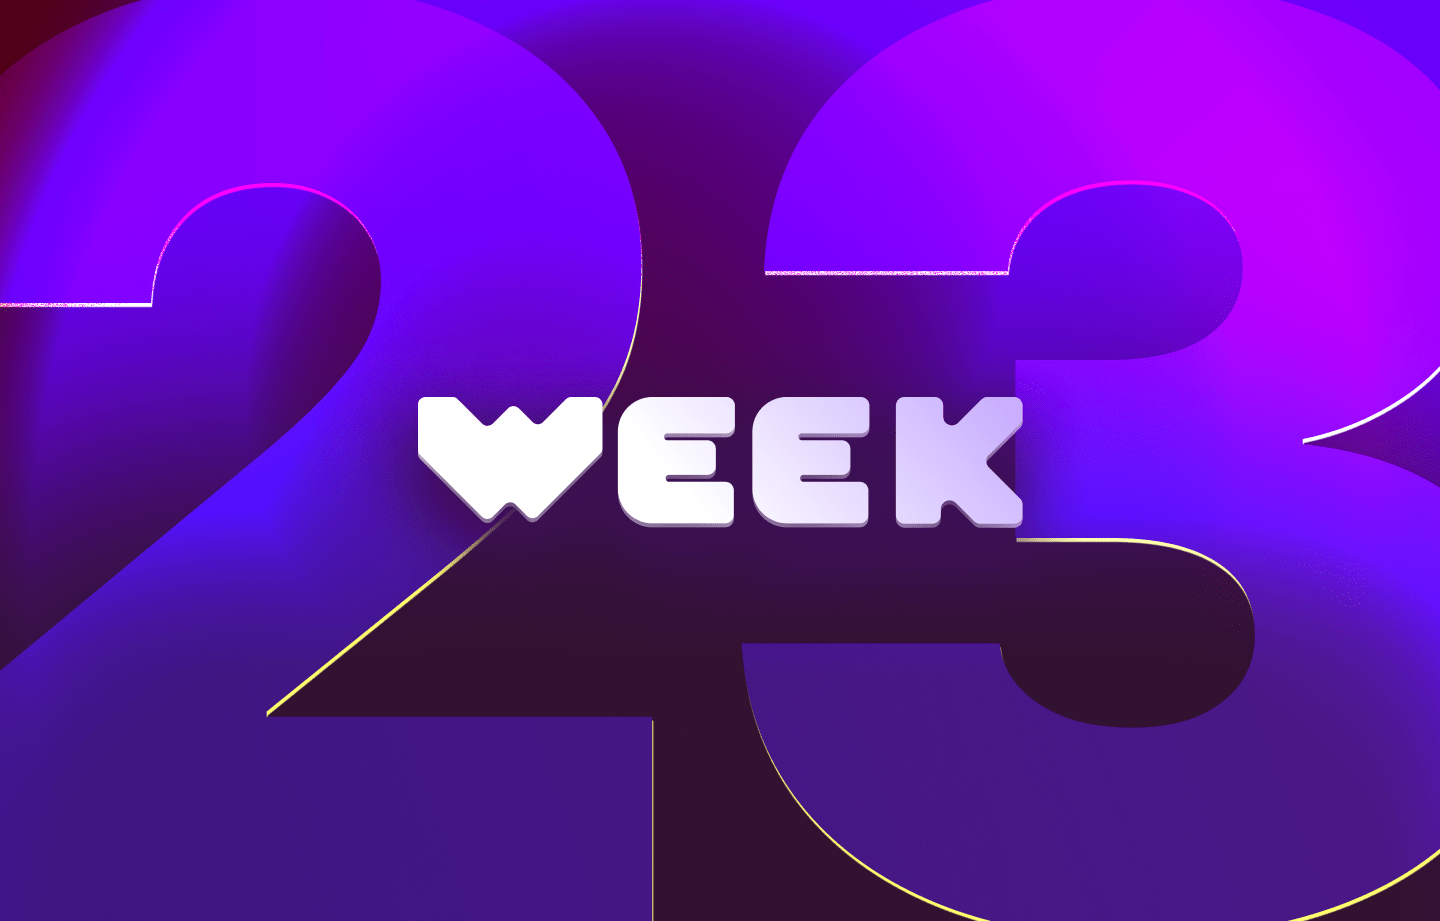 This week in web3 #23